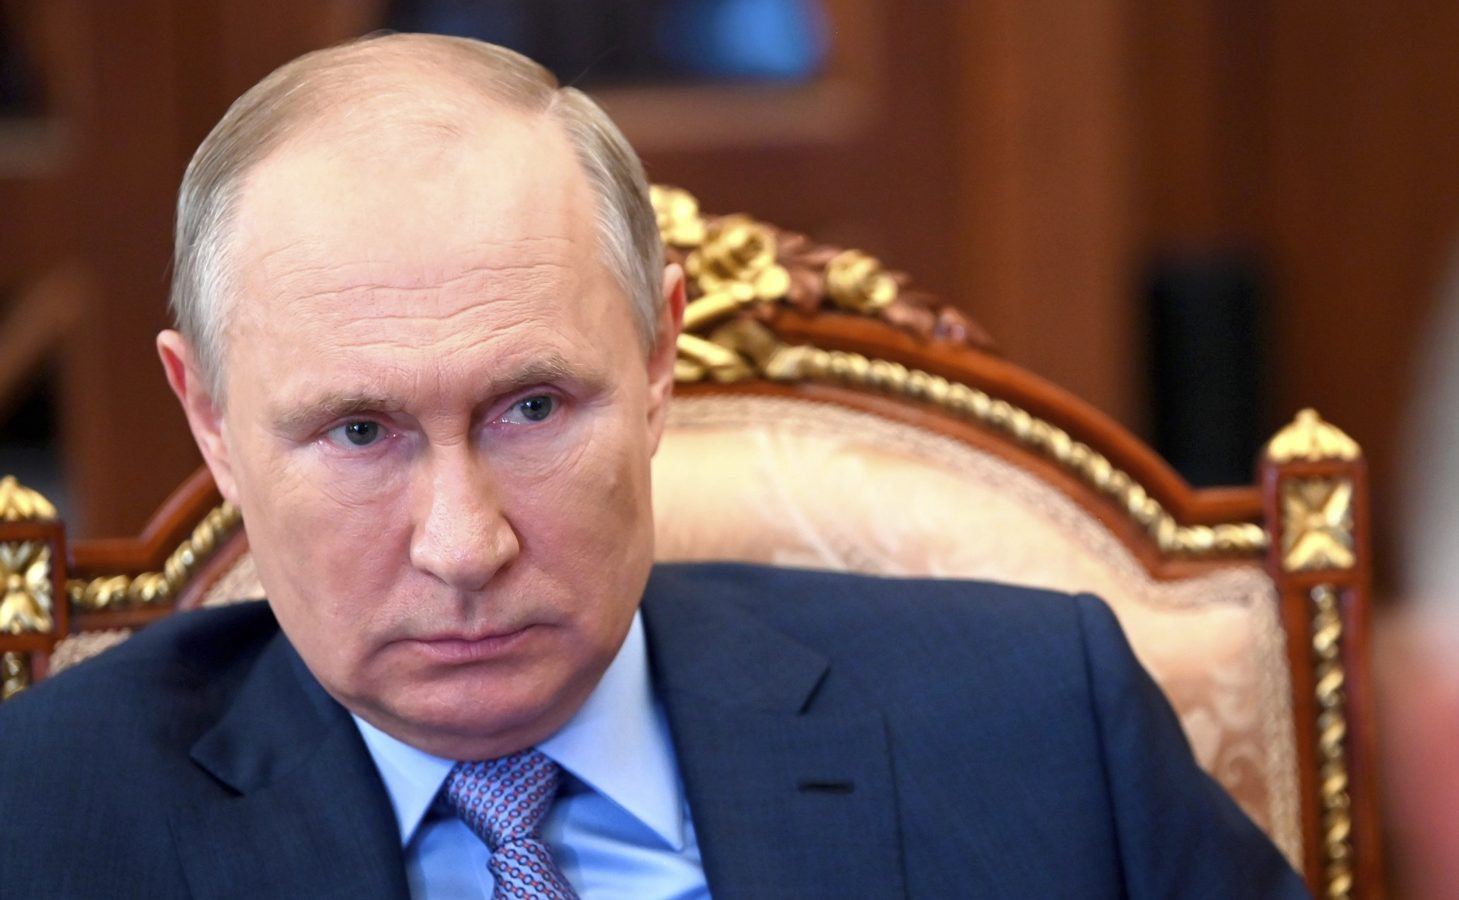 Putin Ukrayna’ya “Ya benimle evlen ya da seni öldürürüm” diyor